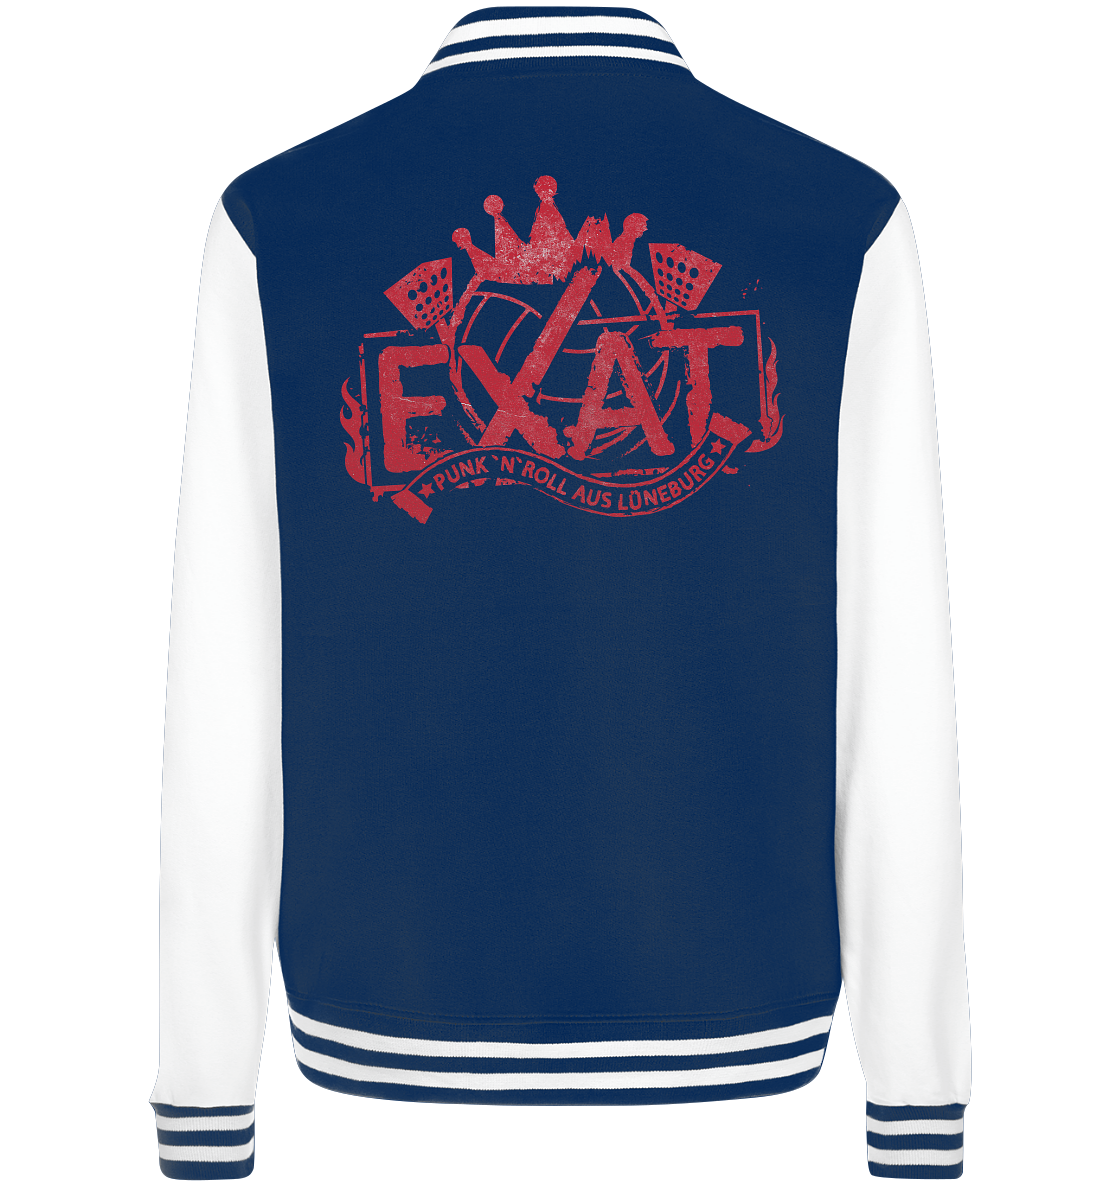 EXAT - Logo - College Jacket